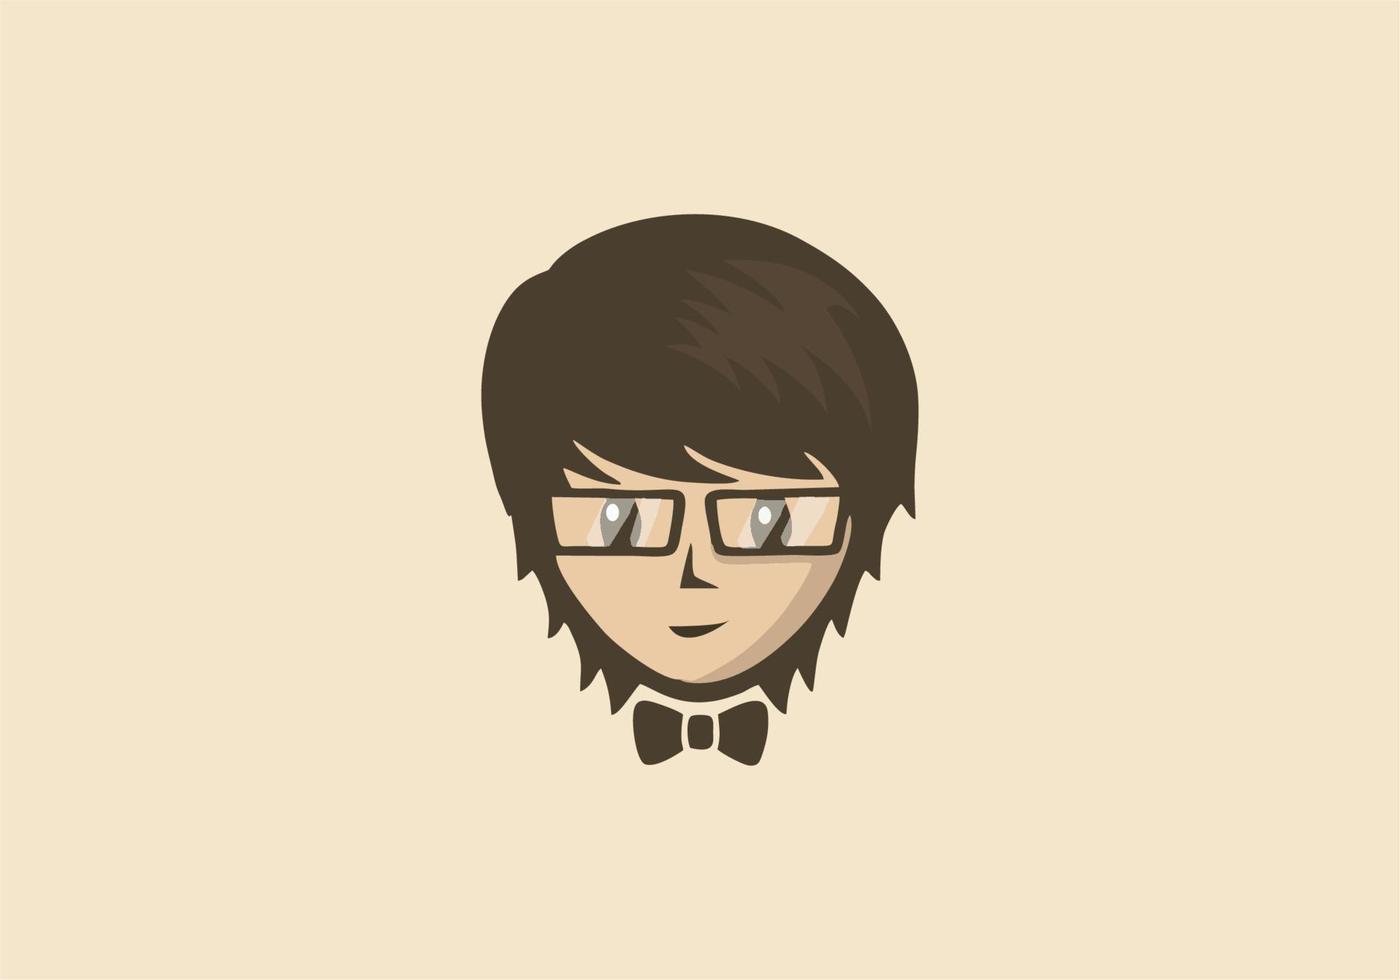 illustratie vectorafbeelding van gezicht van een jongen met bril en vlinderdas perfect voor logo business,esport,etc vector